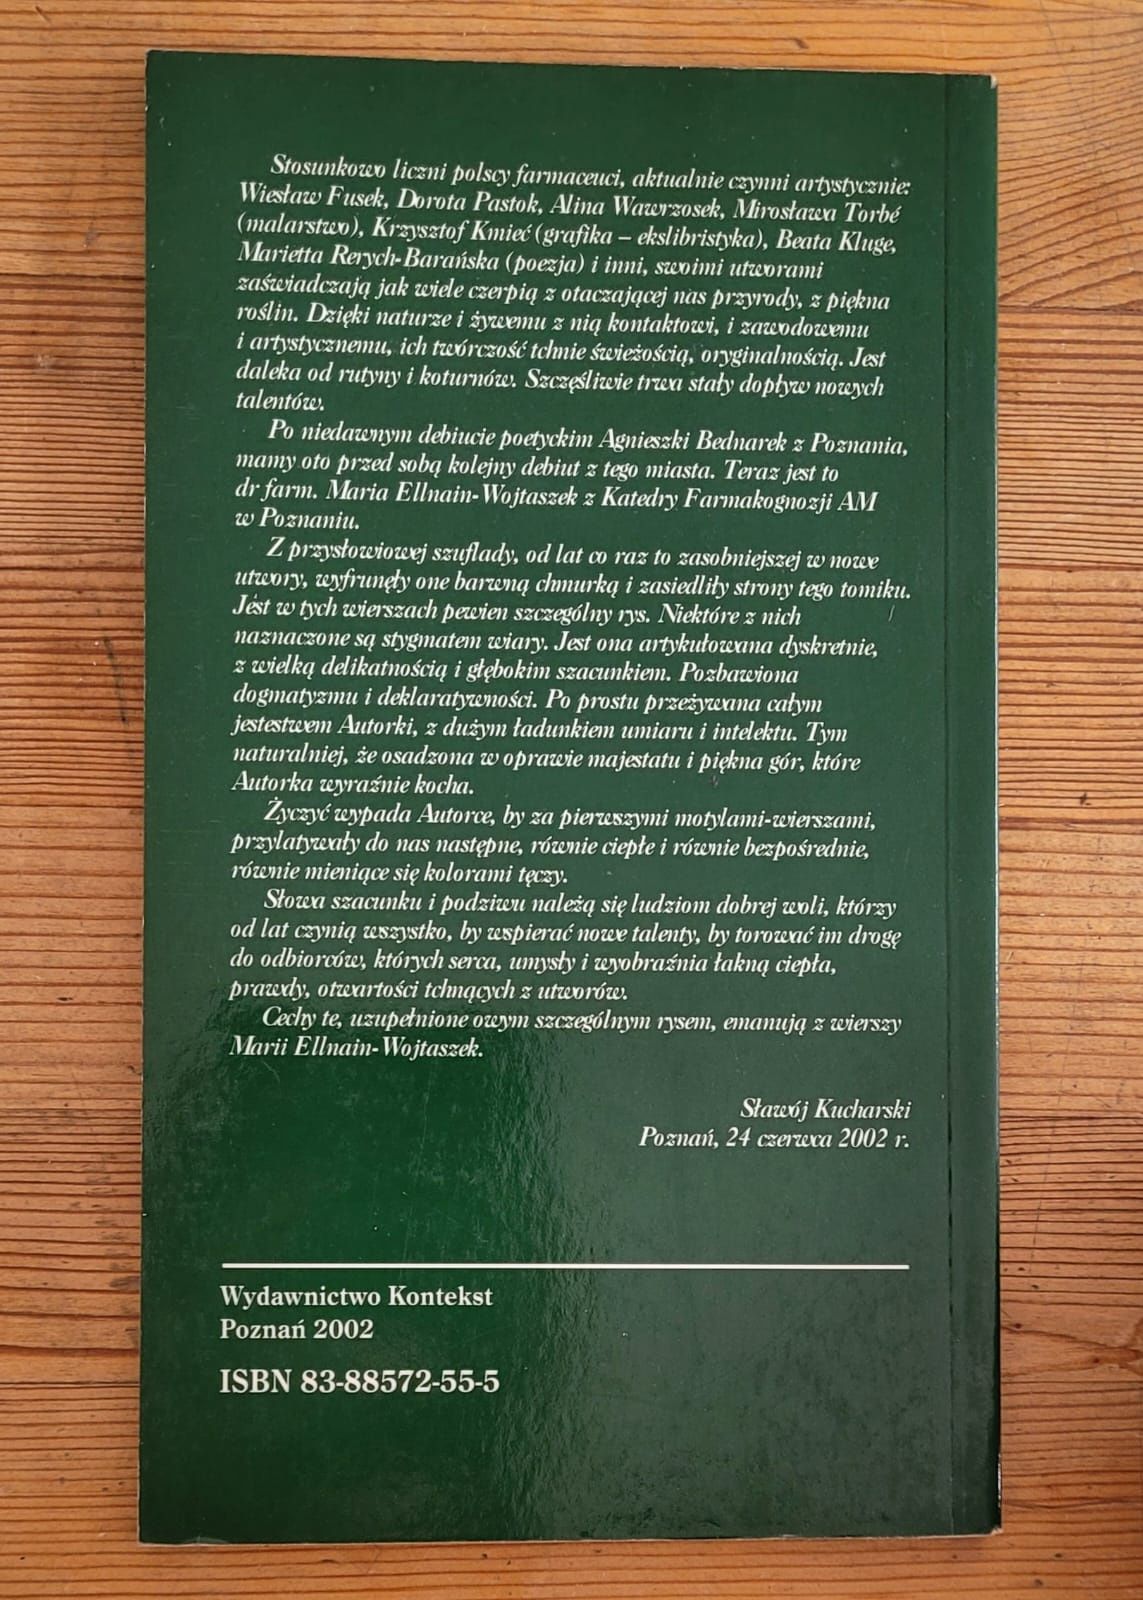 Książka Przemyślenia z Szuflady M.Ellnain-Wojtaszek